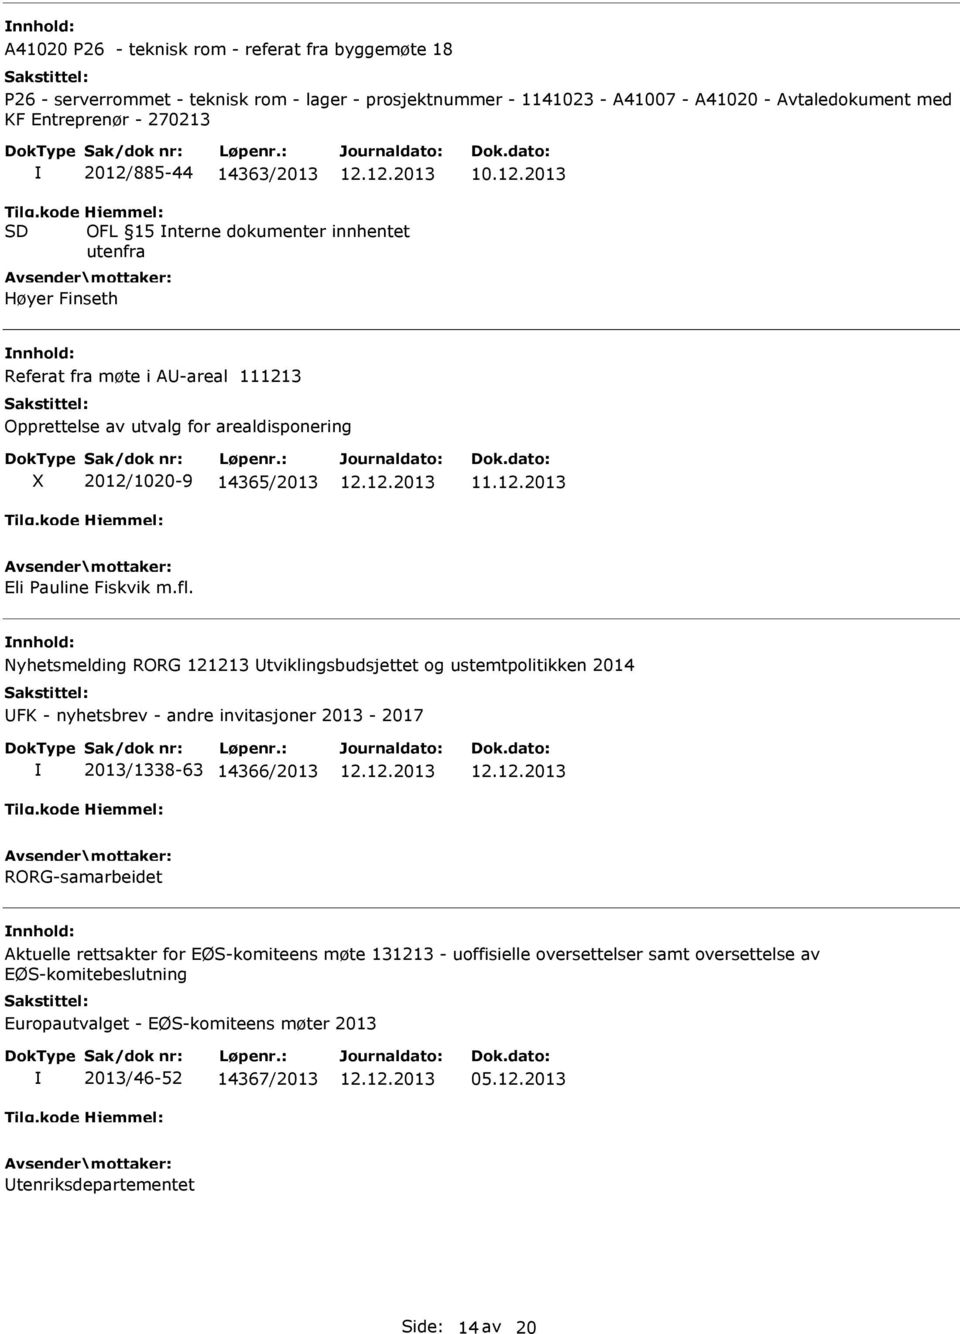 2013 OFL 15 nterne dokumenter innhentet utenfra Høyer Finseth Referat fra møte i A-areal 111213 Opprettelse av utvalg for arealdisponering 2012/1020-9 14365/2013 Eli Pauline Fiskvik m.fl.